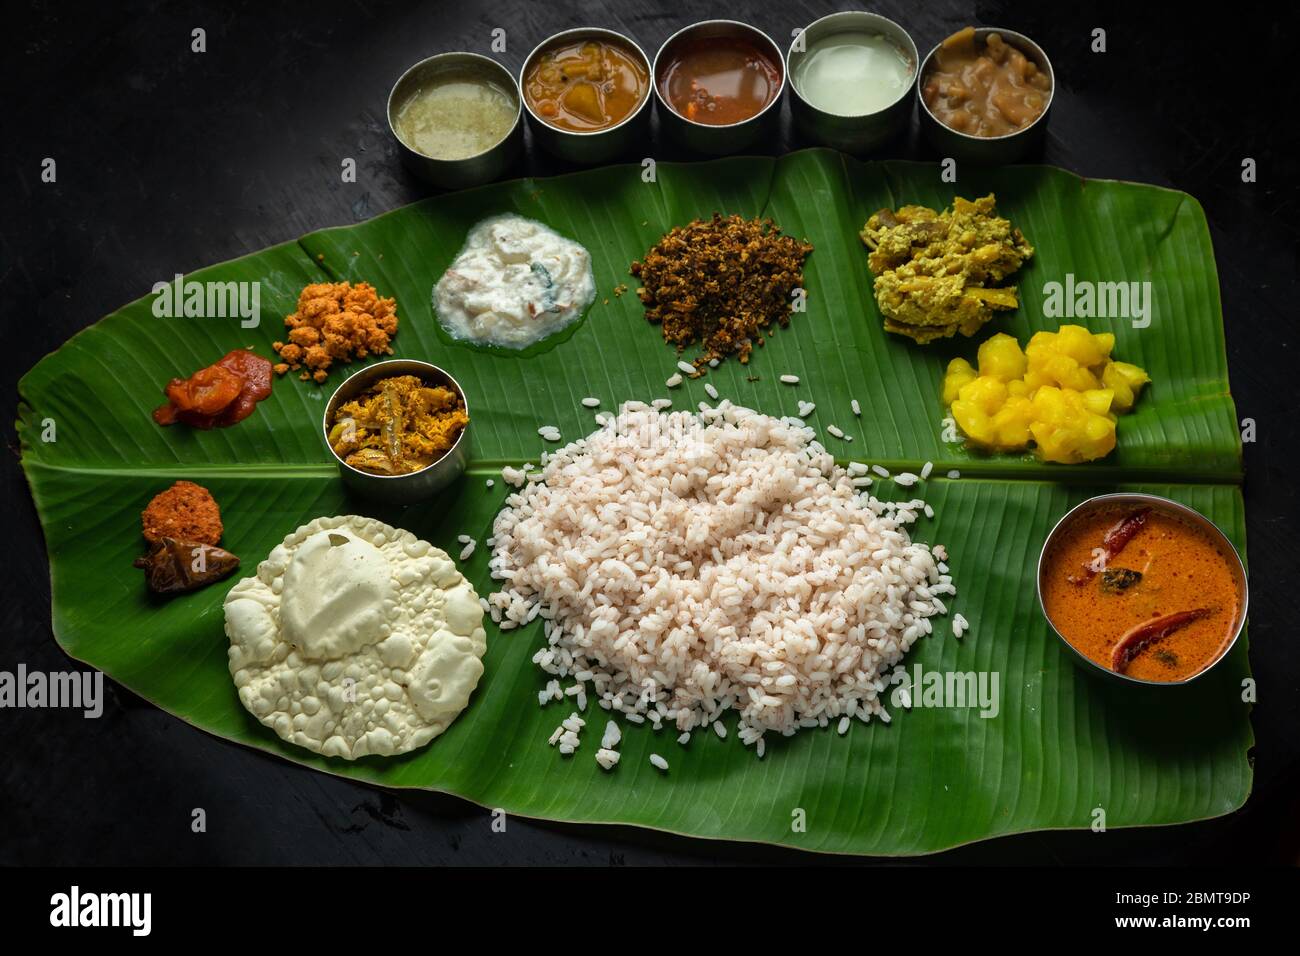 Kerala-Stil Fisch Curry Mahlzeiten auf Bananenblatt Stockfoto